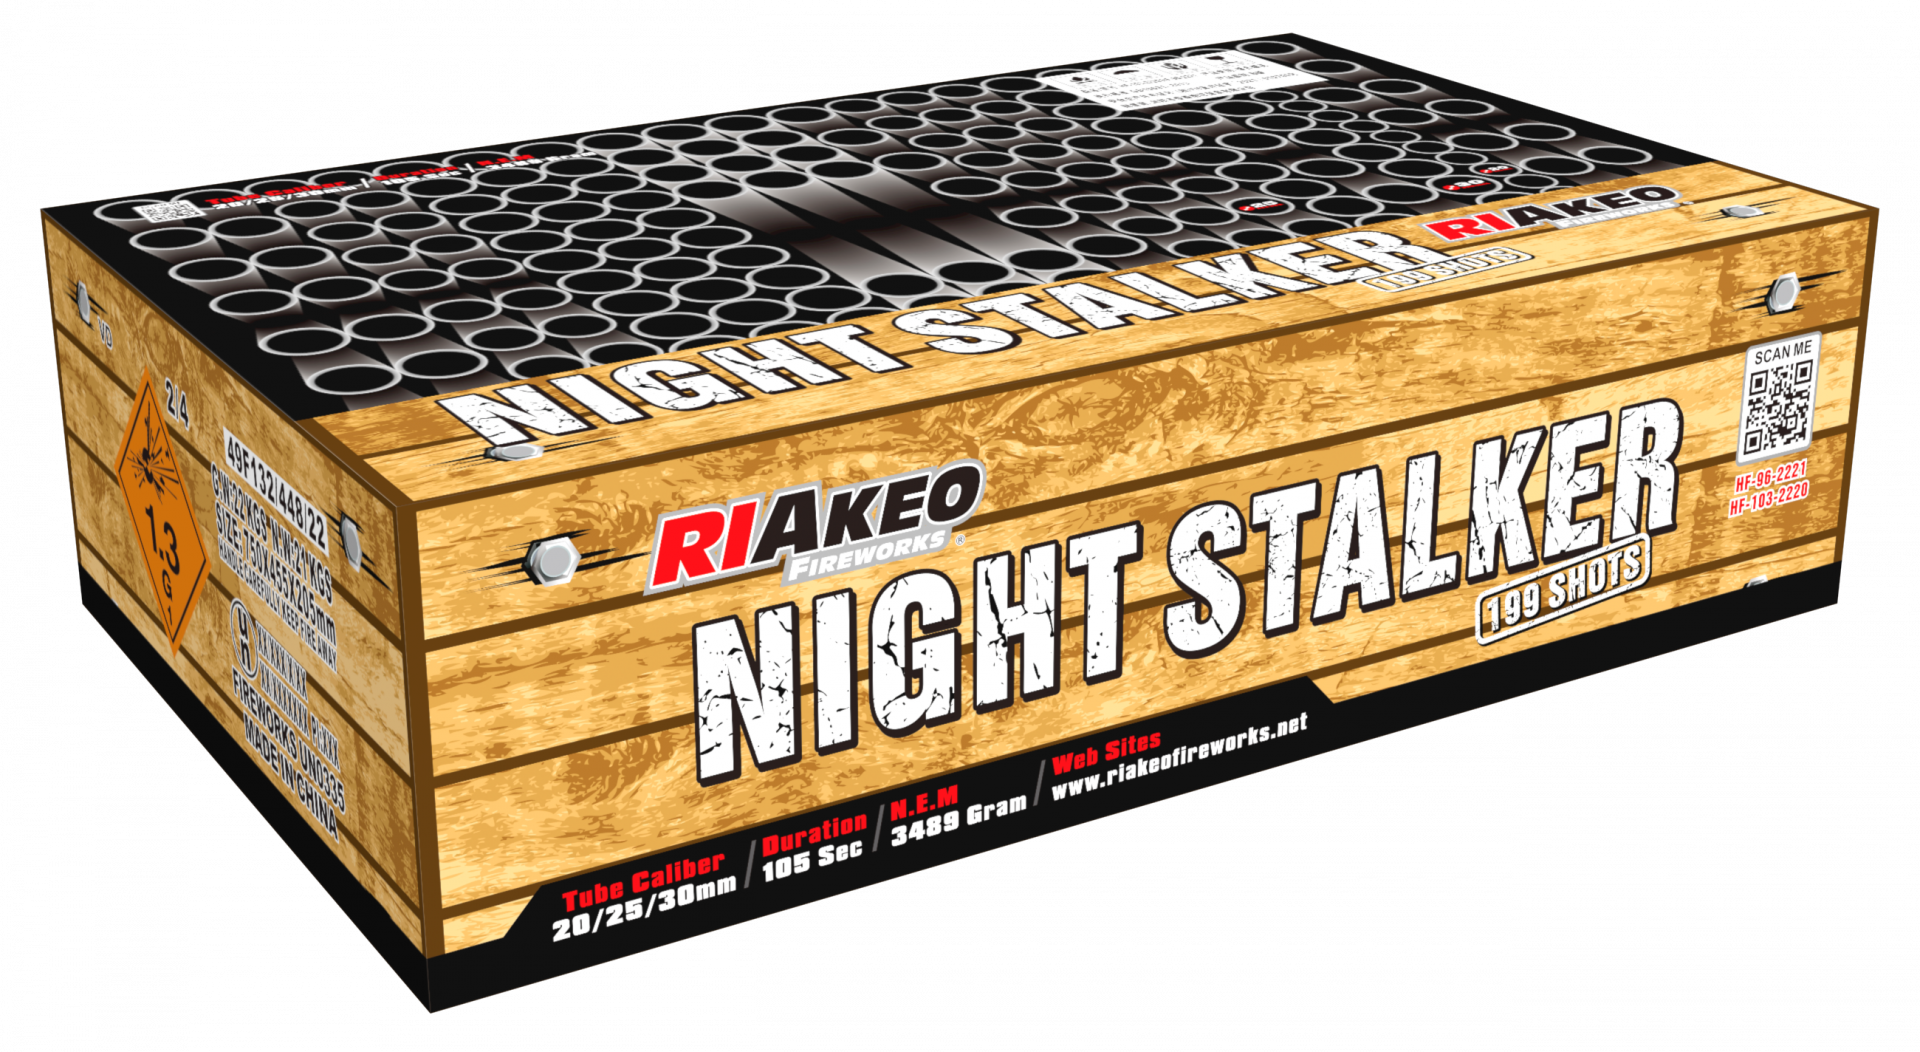 Riakeo Night Stalker